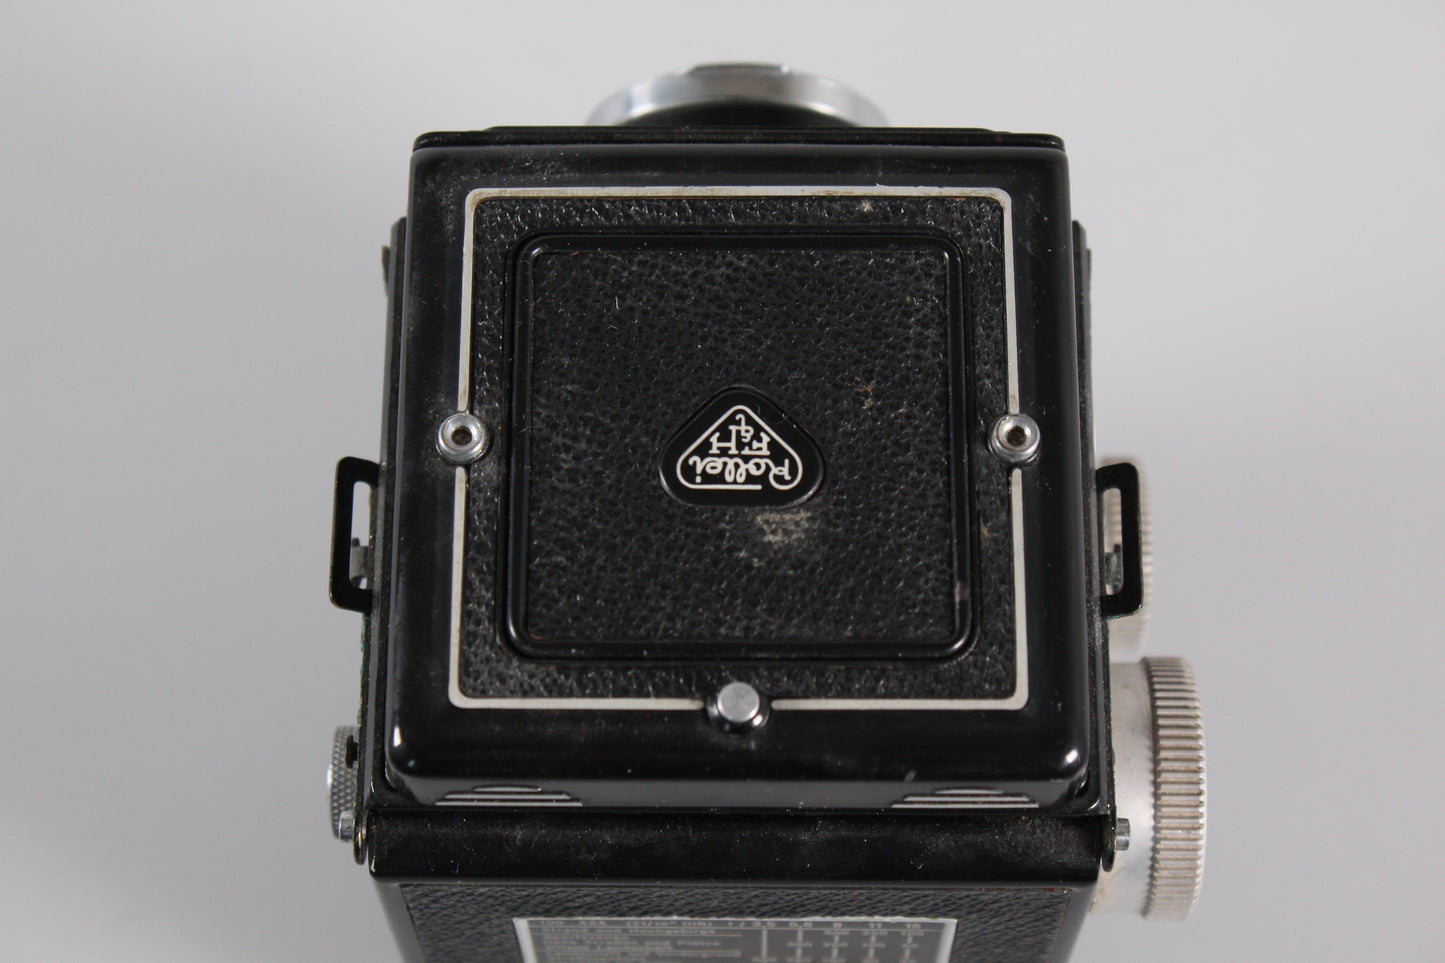 Rolleicord III Schneider Xenar 75mm f3.5 Medium Format Camera TLR